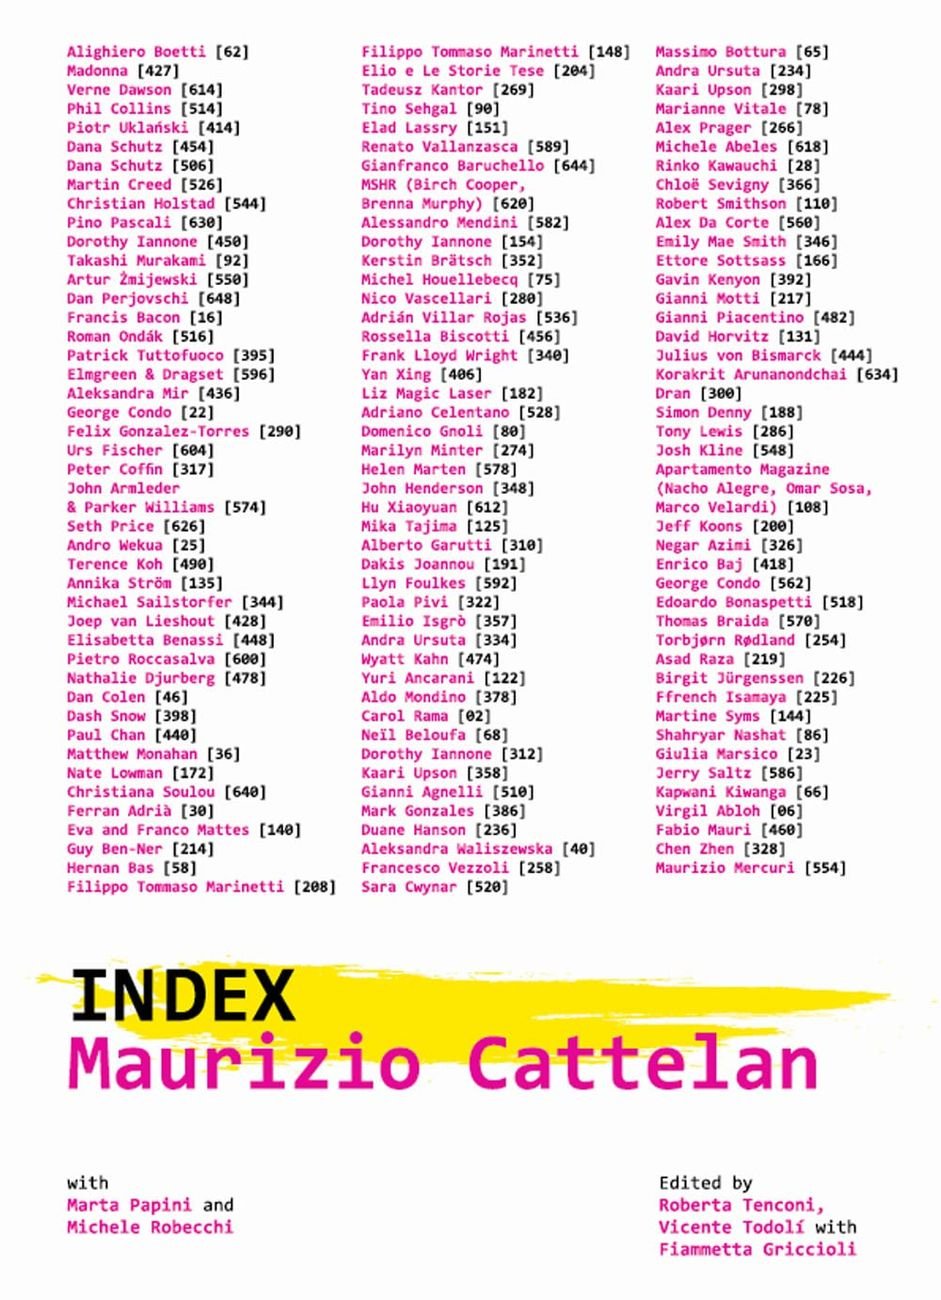 Maurizio Cattelan – Index (Marsilio, Venezia 2021)